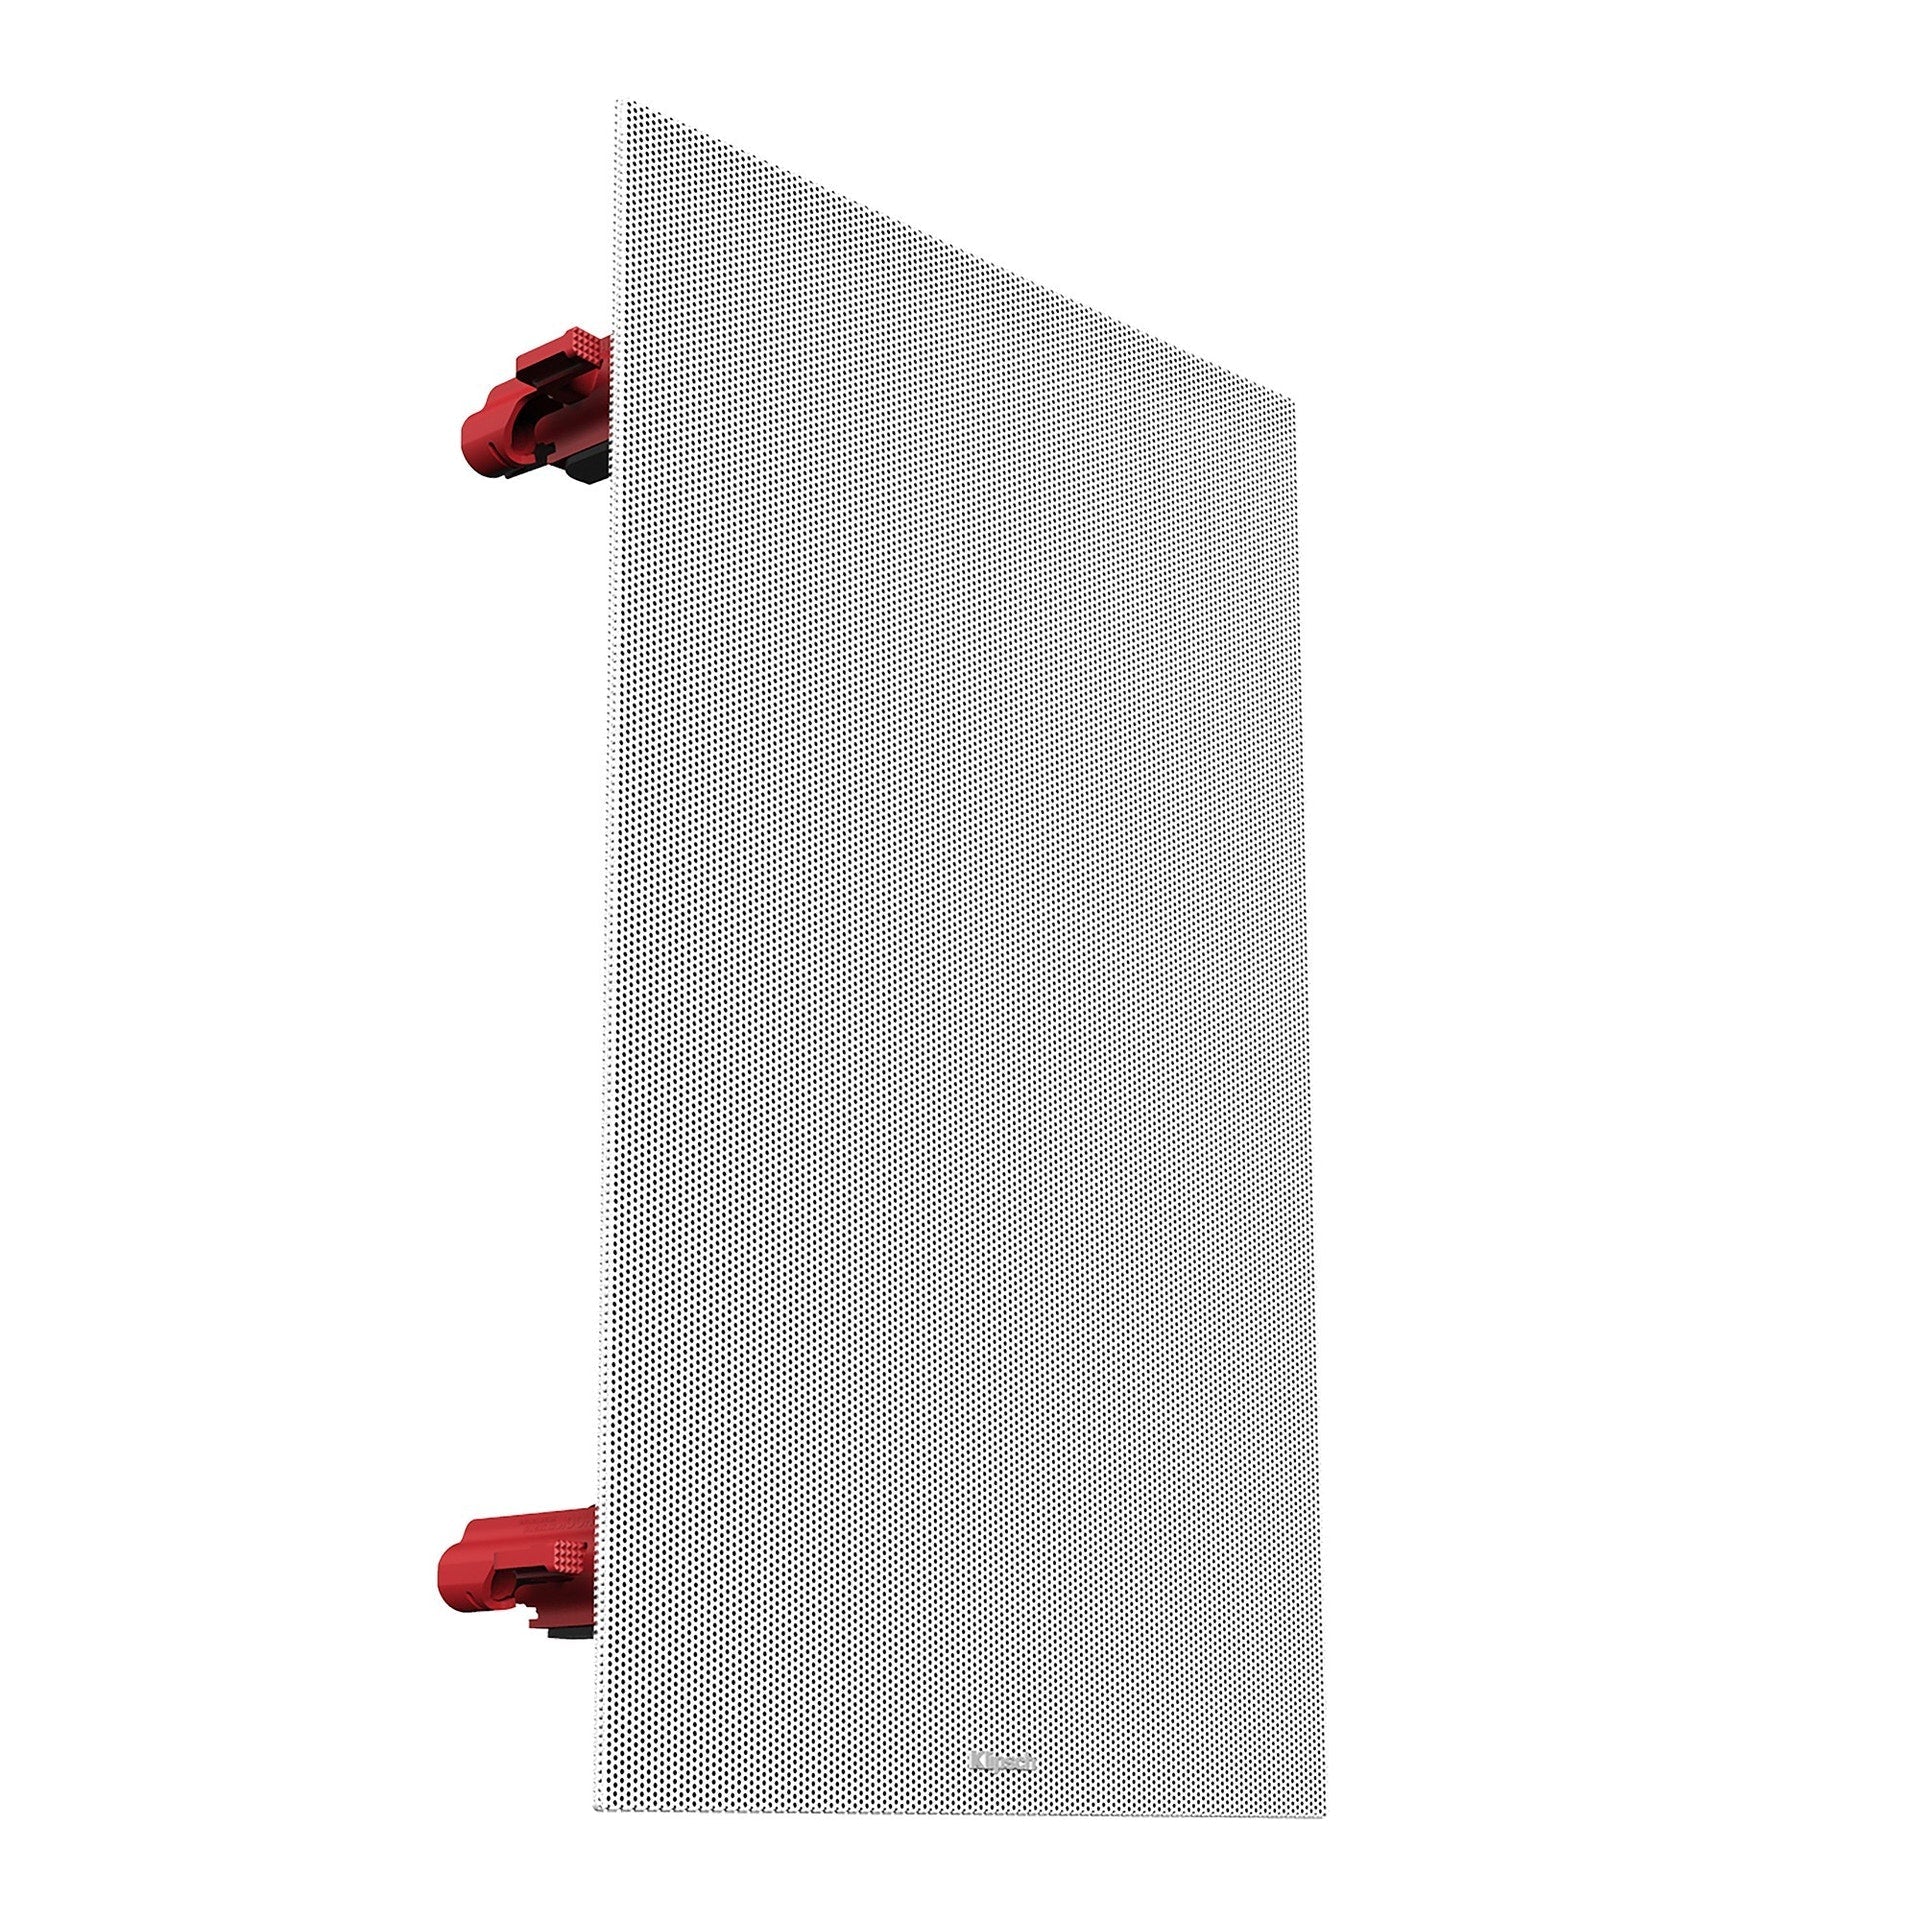 Klipsch DS-160W 6.5" In-Wall Speaker (Single)